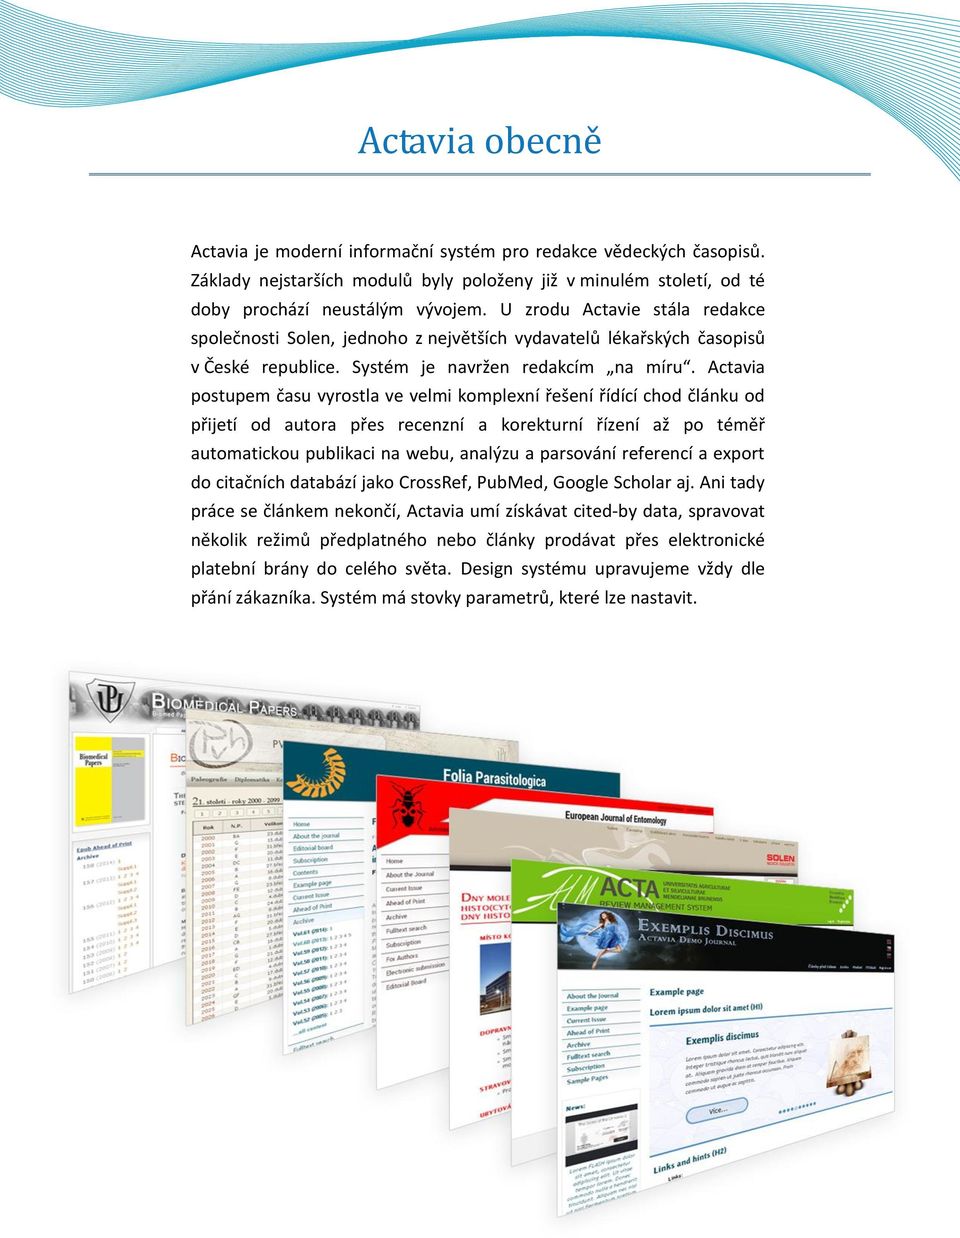 Actavia postupem času vyrostla ve velmi komplexní řešení řídící chod článku od přijetí od autora přes recenzní a korekturní řízení až po téměř automatickou publikaci na webu, analýzu a parsování